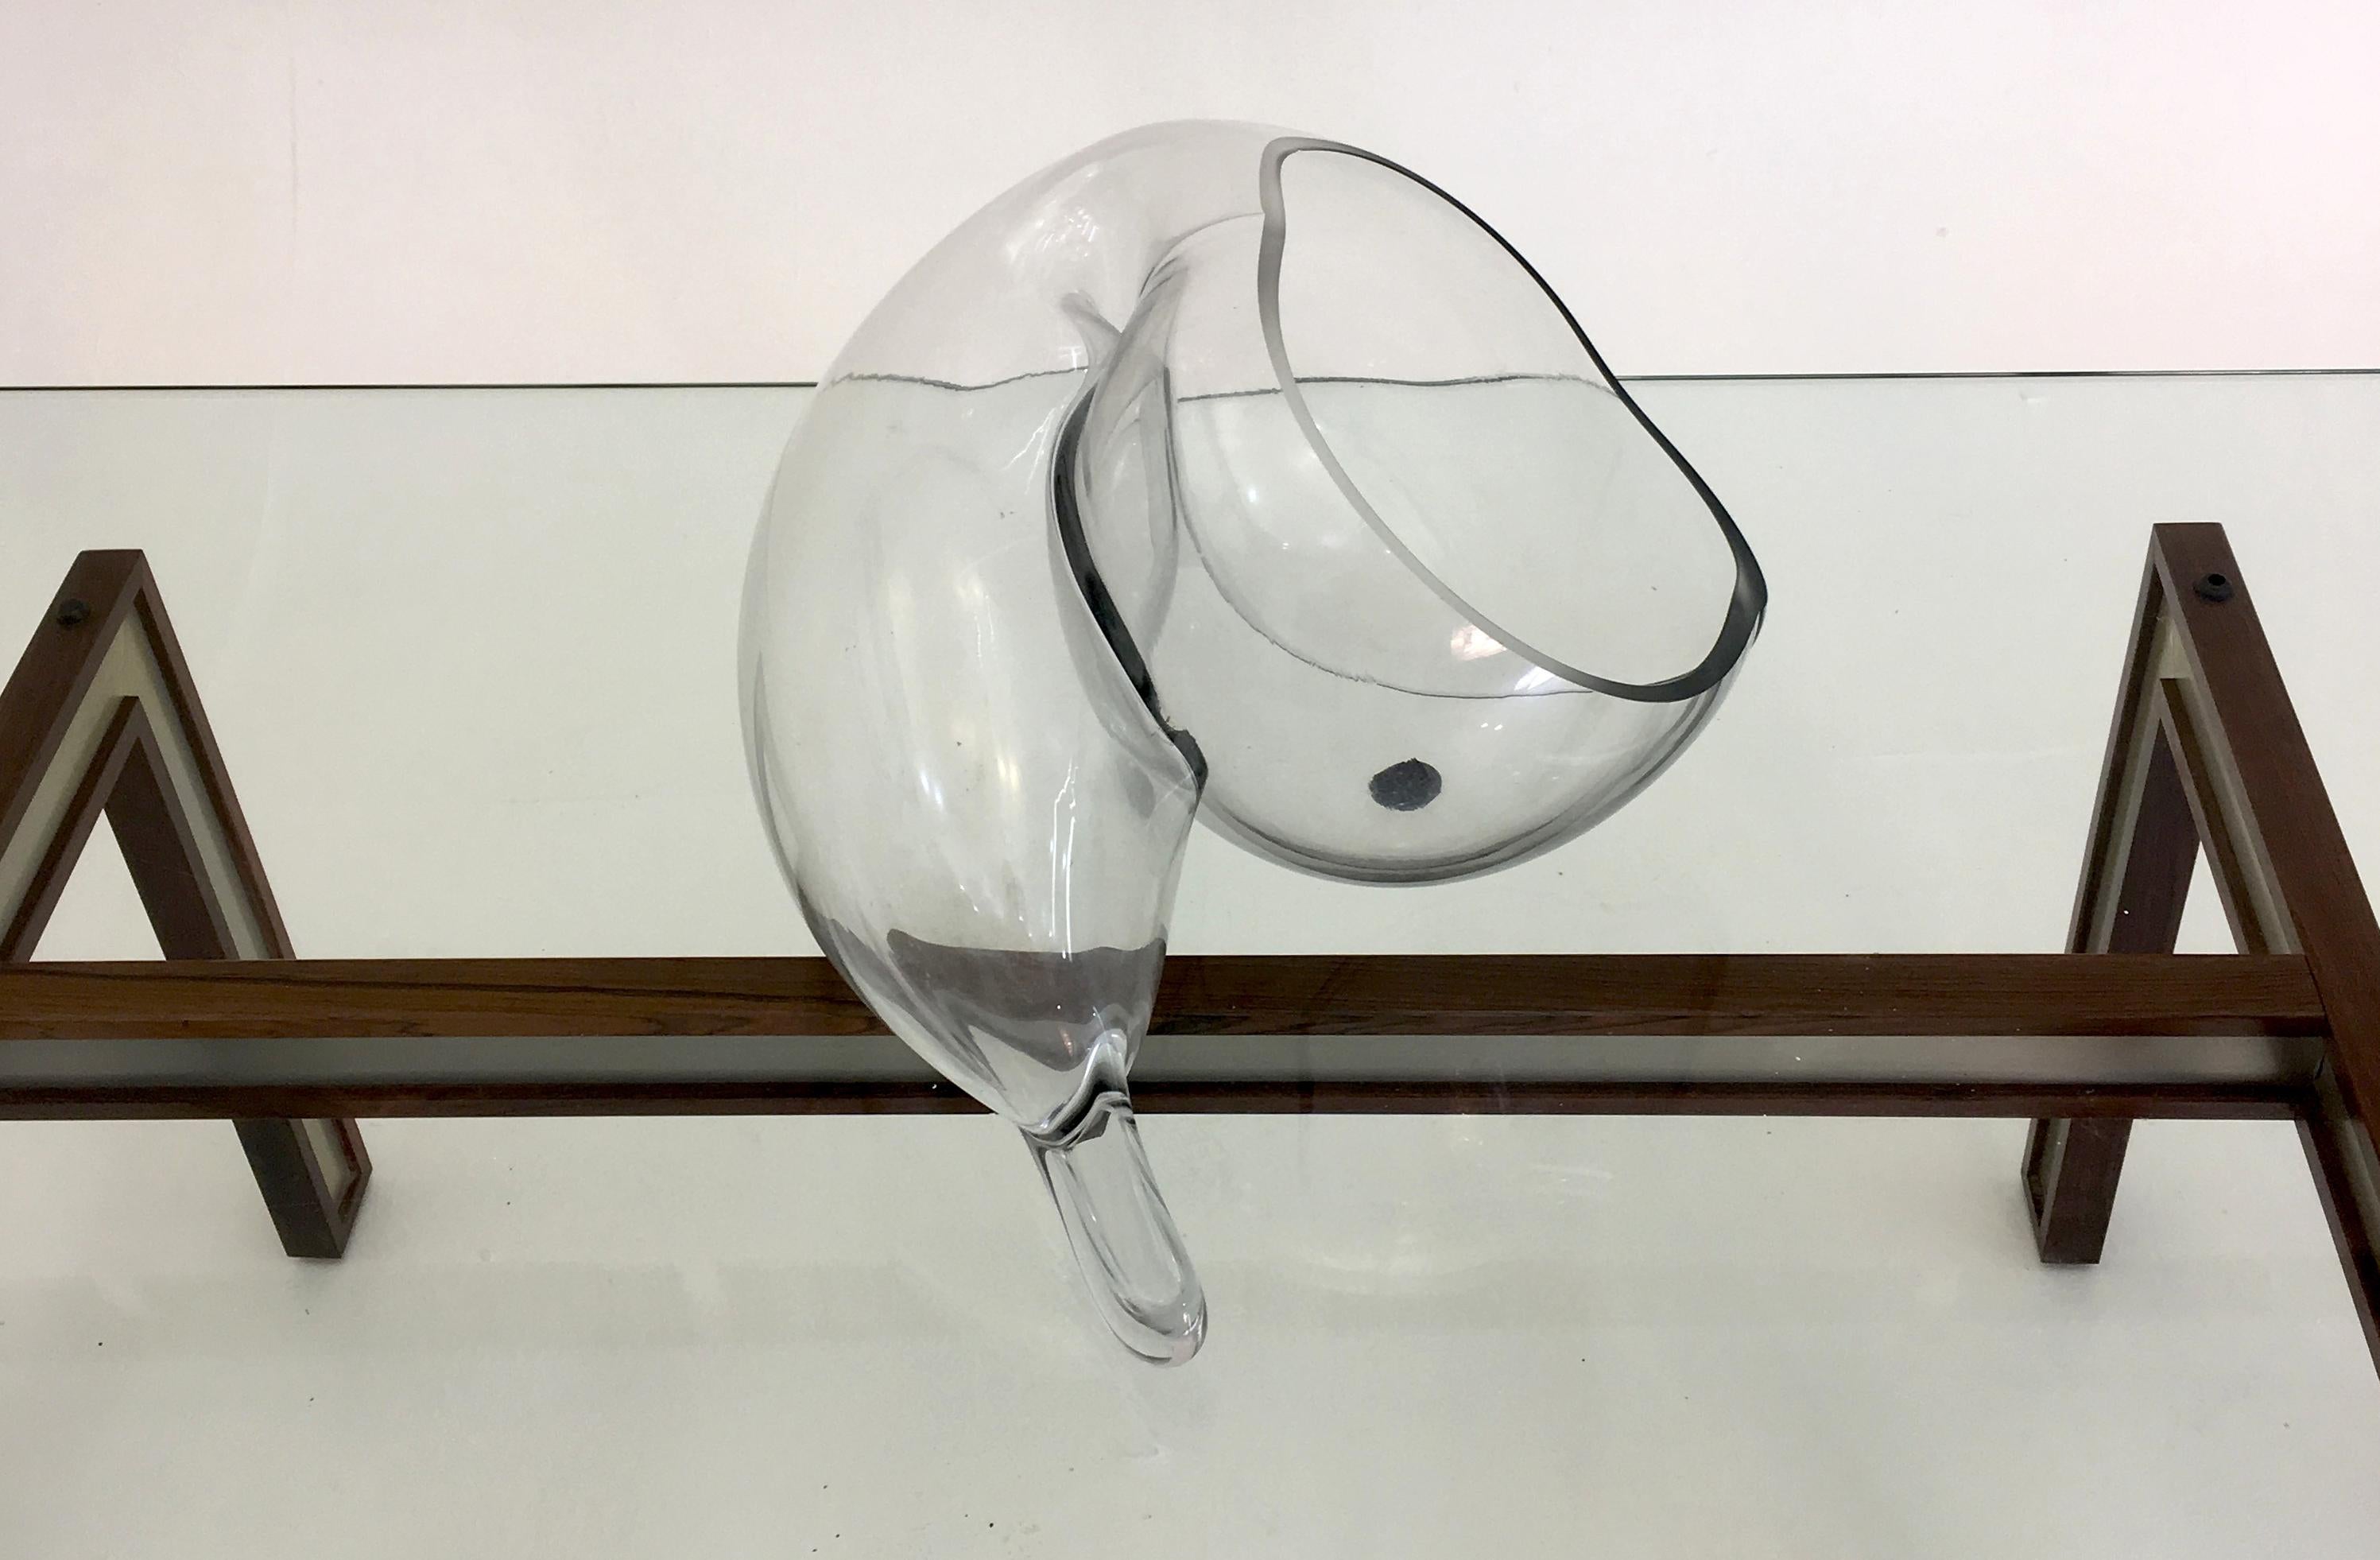 John Bingham, Glasbläser, Künstler
um 1980
Handgeblasenes Glas Santa Fe, New Mexico, USA
Maße: 8 hoch x 17 breit x 13 Zoll tief.

Eines von 2 Werken dieses Künstlers, die wir aufgelistet haben. Wir haben ein kleines und ein großes Modell zur